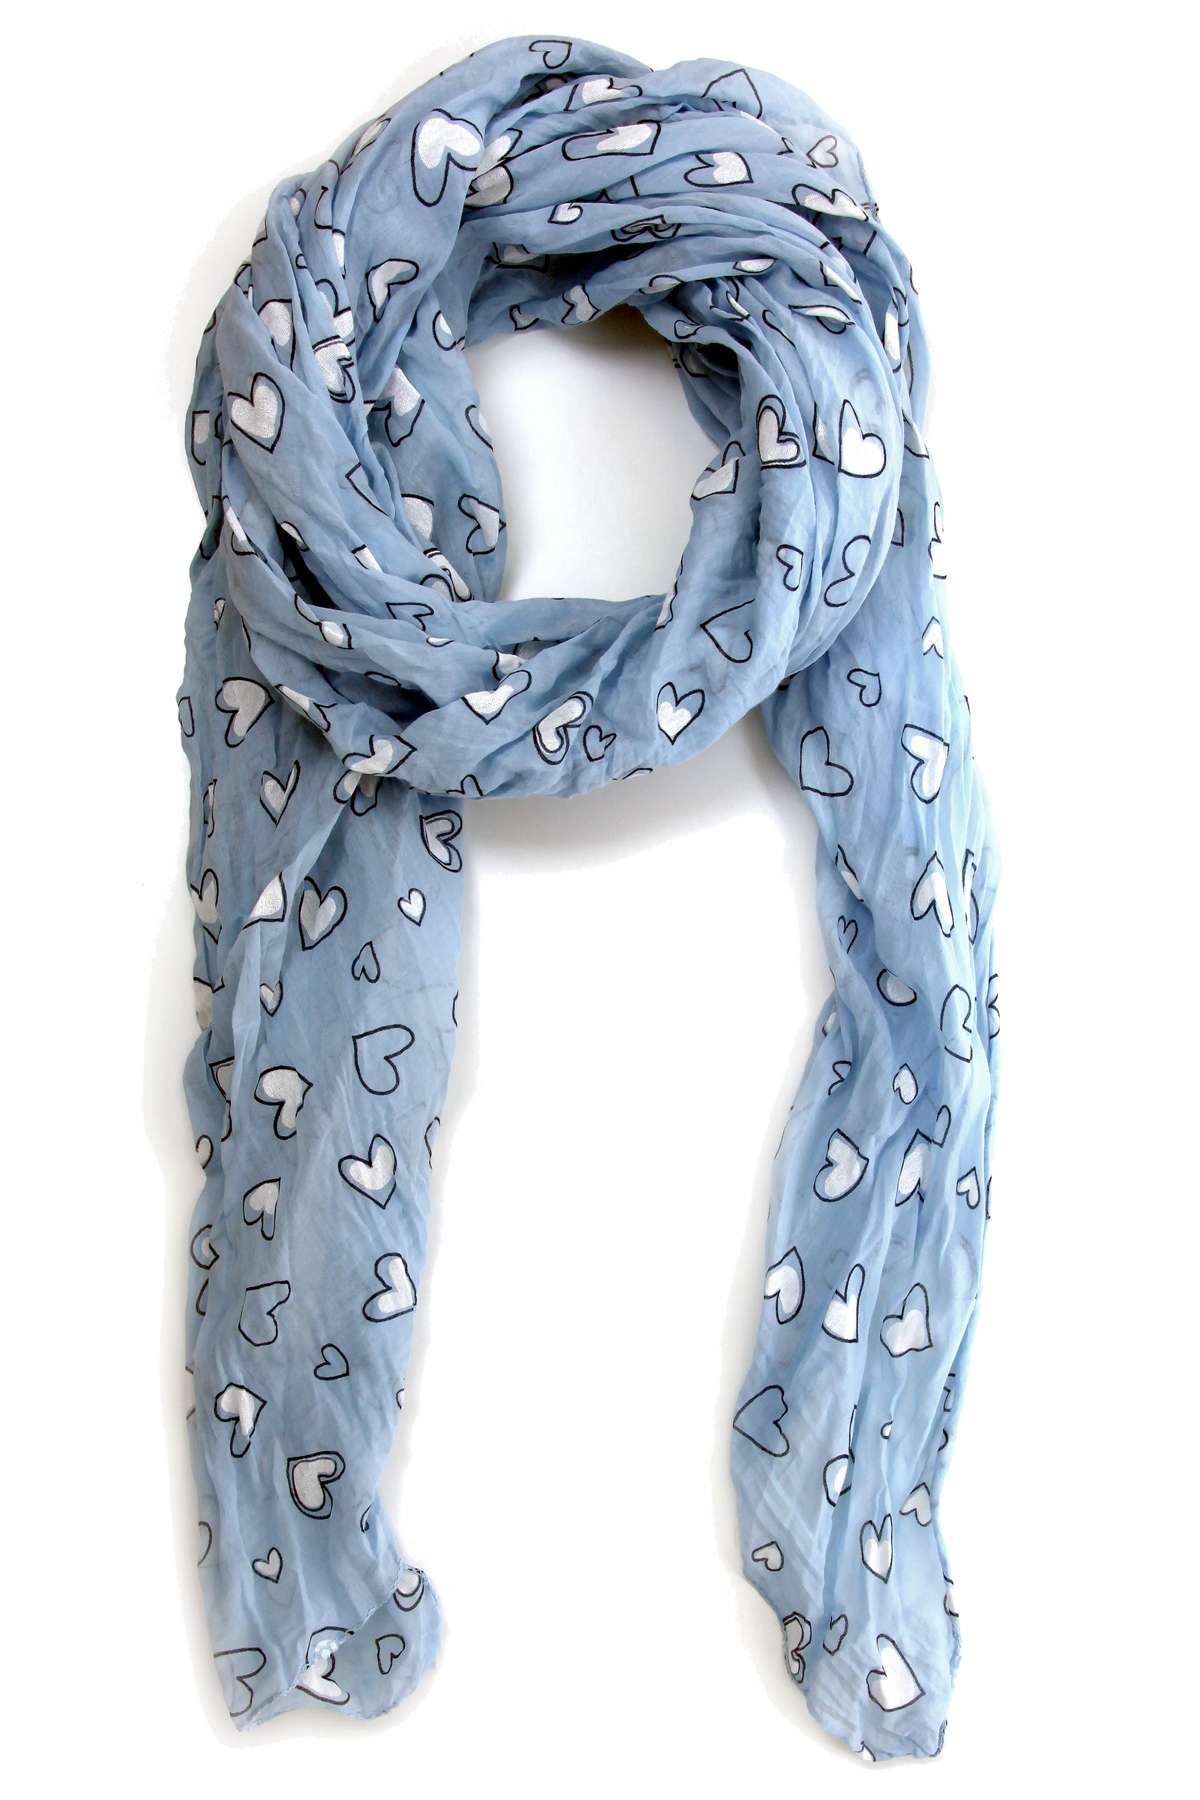 Модный шарф (1 шт.) с сердечками, производство Италия.